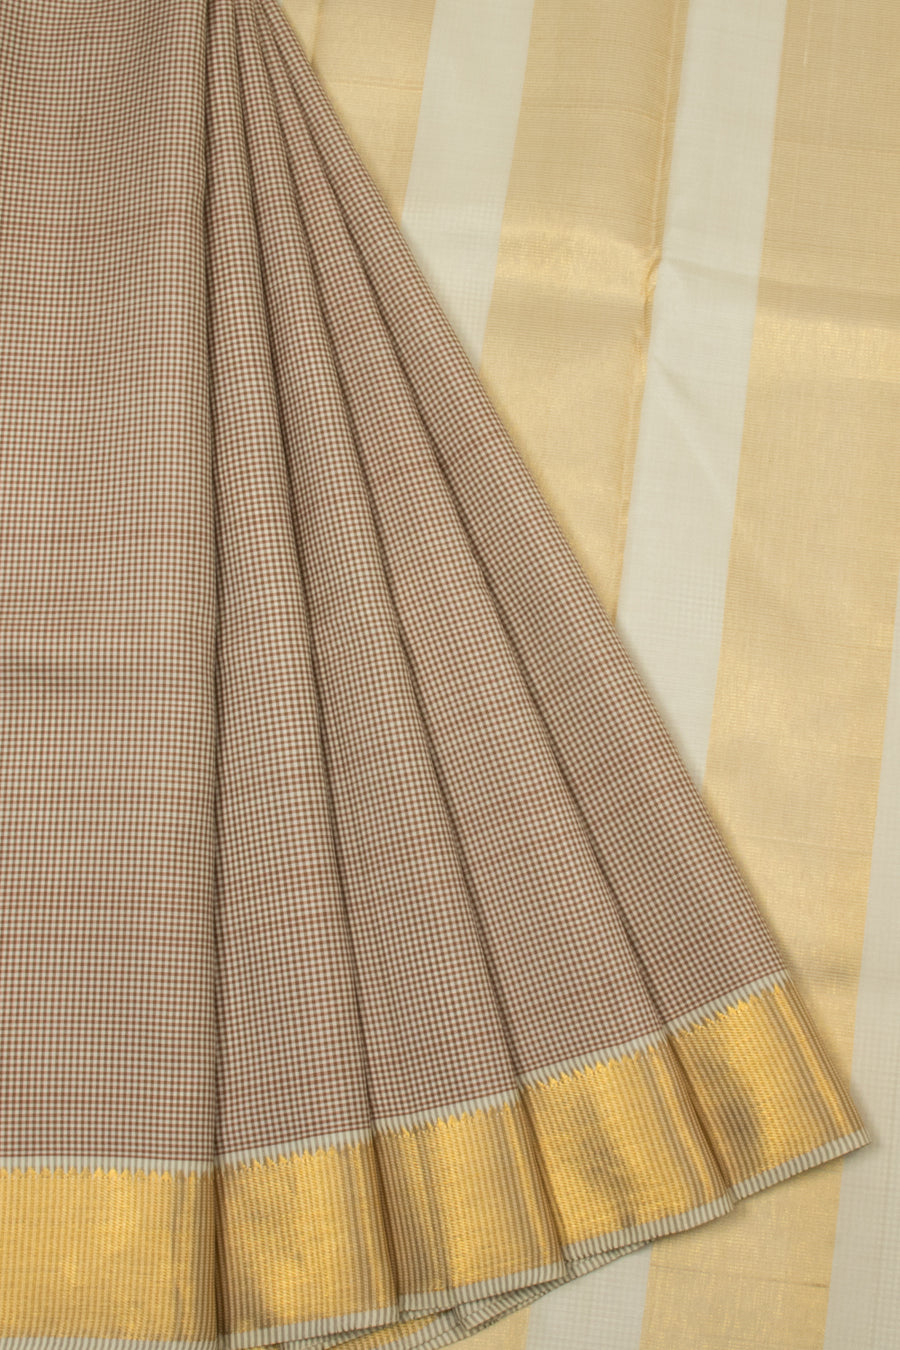 Brown Handloom Kanjivaram Silk Saree - Avishya